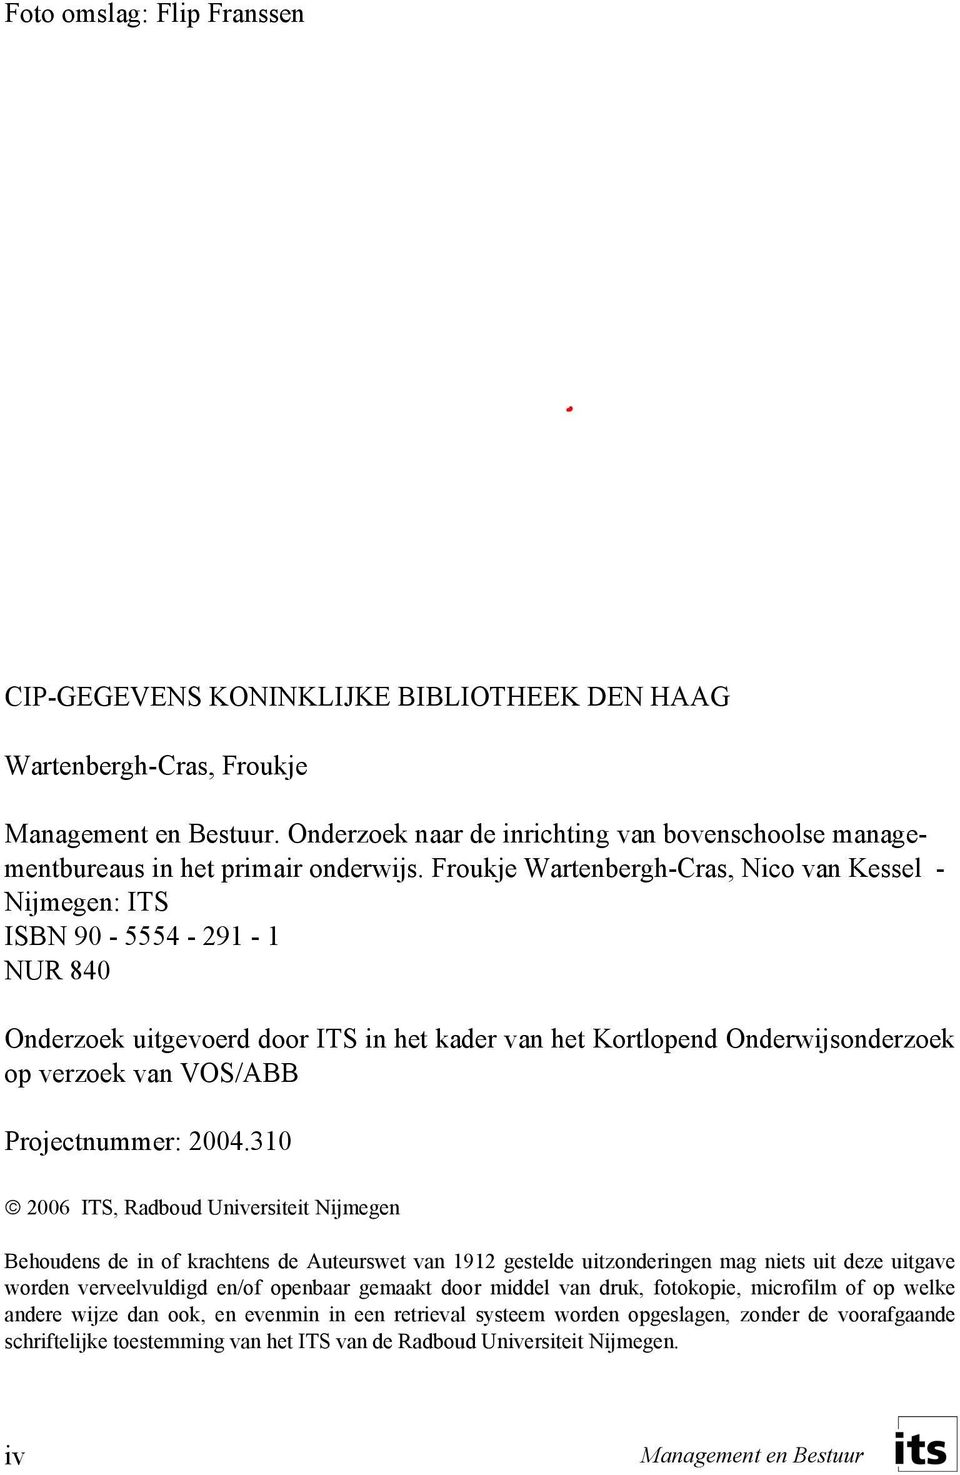 Froukje Wartenbergh-Cras, Nico van Kessel - Nijmegen: ITS ISBN 90-5554 - 291-1 NUR 840 Onderzoek uitgevoerd door ITS in het kader van het Kortlopend Onderwijsonderzoek op verzoek van VOS/ABB